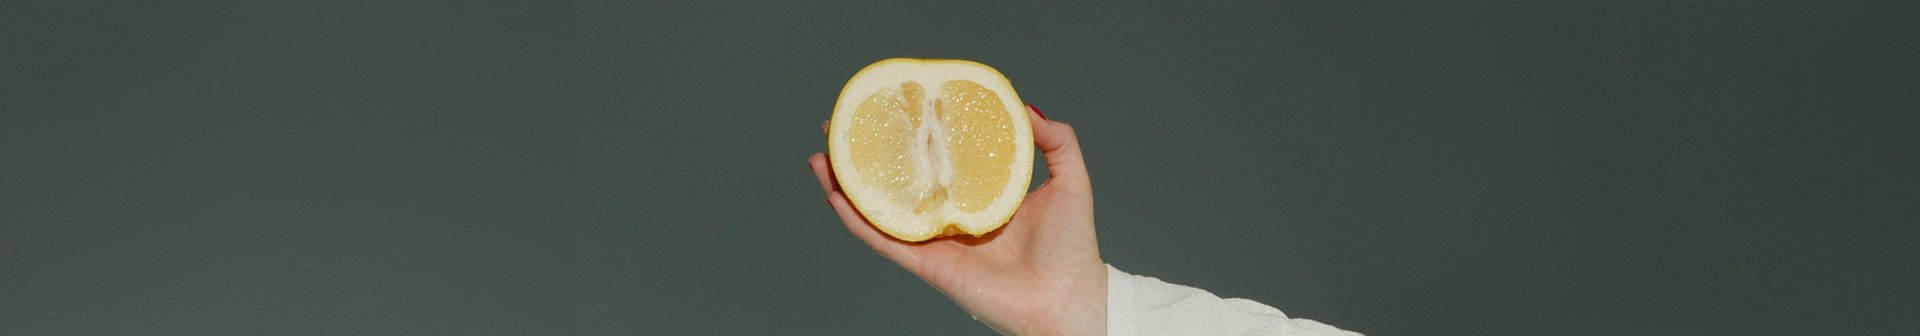 Eine aufgeschittende Zitrone wir von einer Hand gehalten